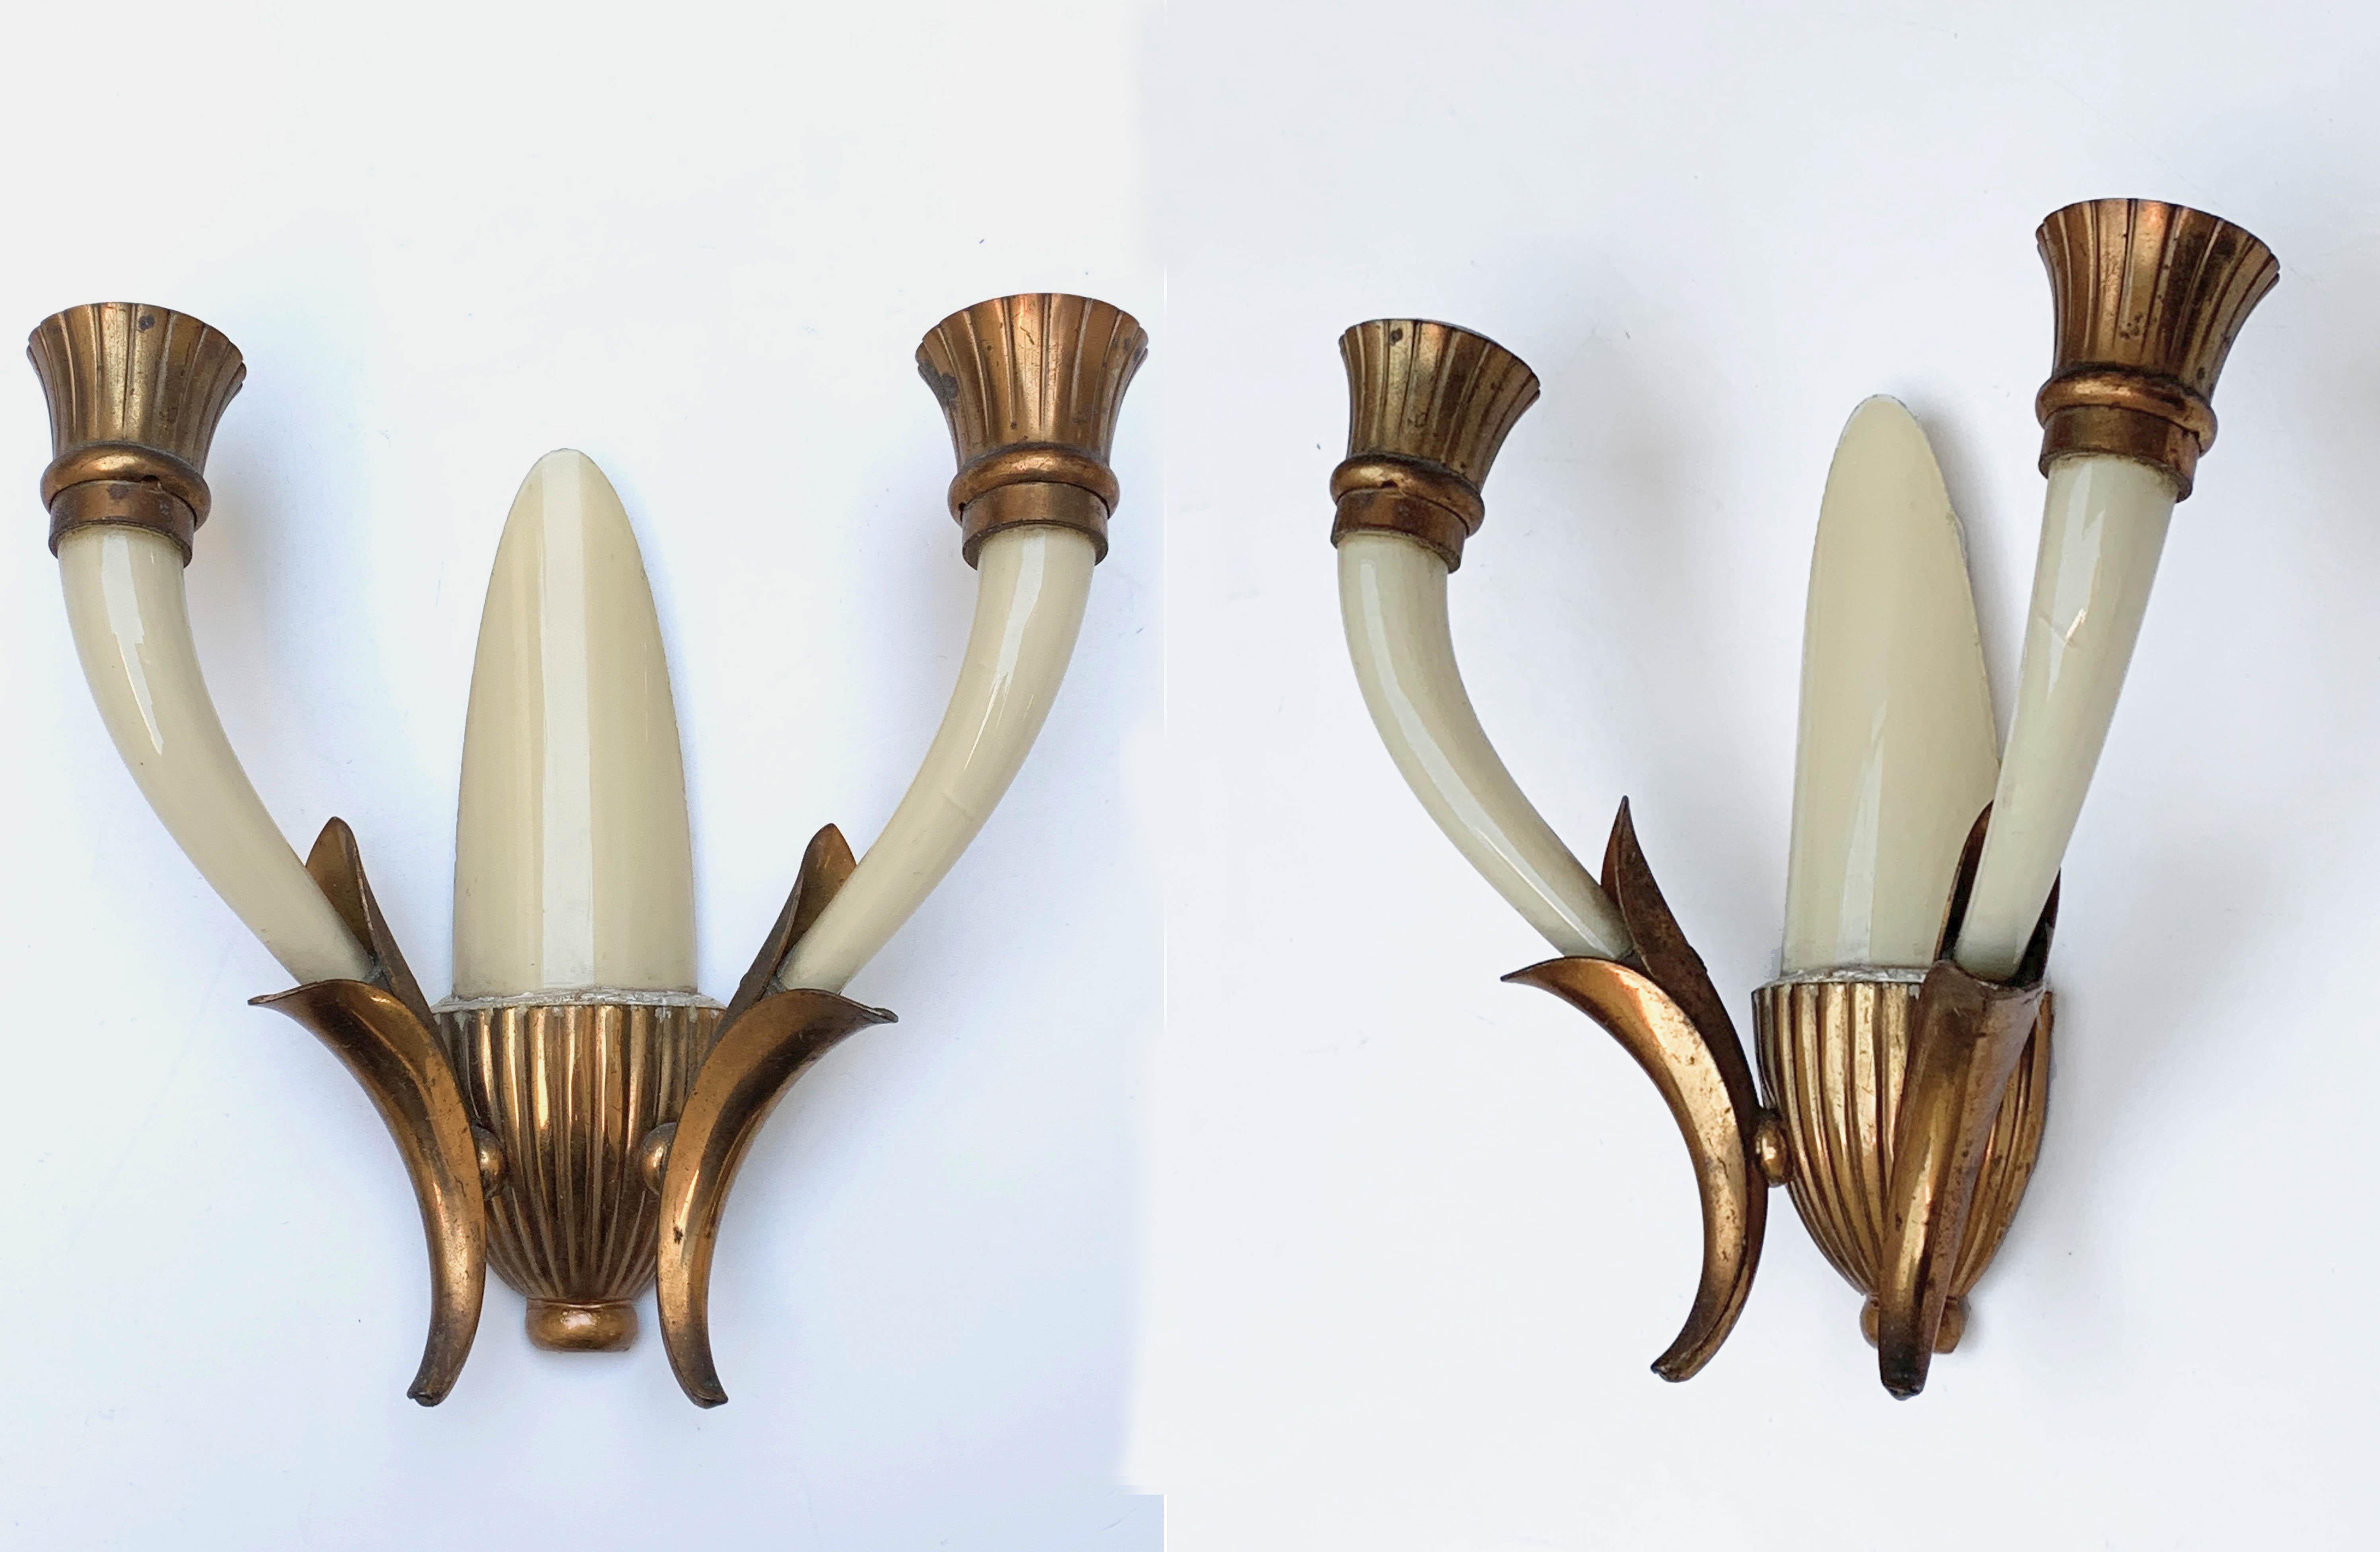 Elegante paire d'appliques attribuée à Gugliemo Ulrich. Ils ont été produits à Venise, en Italie, dans les années 1940.

Cette paire d'appliques est un chef-d'œuvre unique, car les appliques sont entièrement réalisées à la main en verre soufflé de